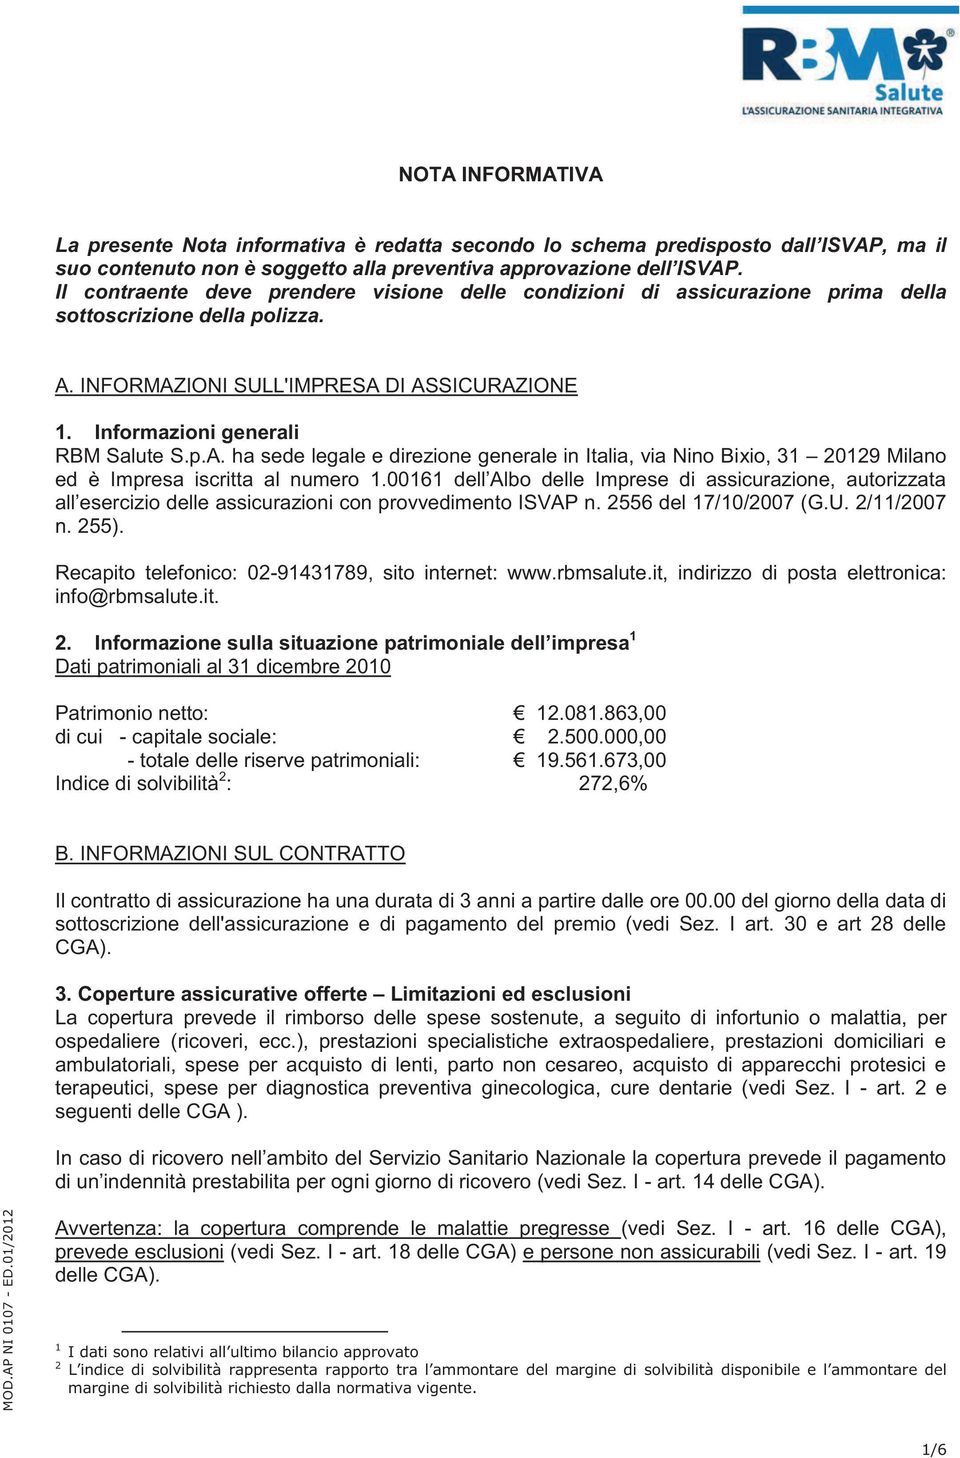 INFORMAZIONI SULL'IMPRESA DI ASSICURAZIONE 1. Informazioni generali RBM Salute S.p.A. ha sede legale e direzione generale in Italia, via Nino Bixio, 31 20129 Milano ed è Impresa iscritta al numero 1.